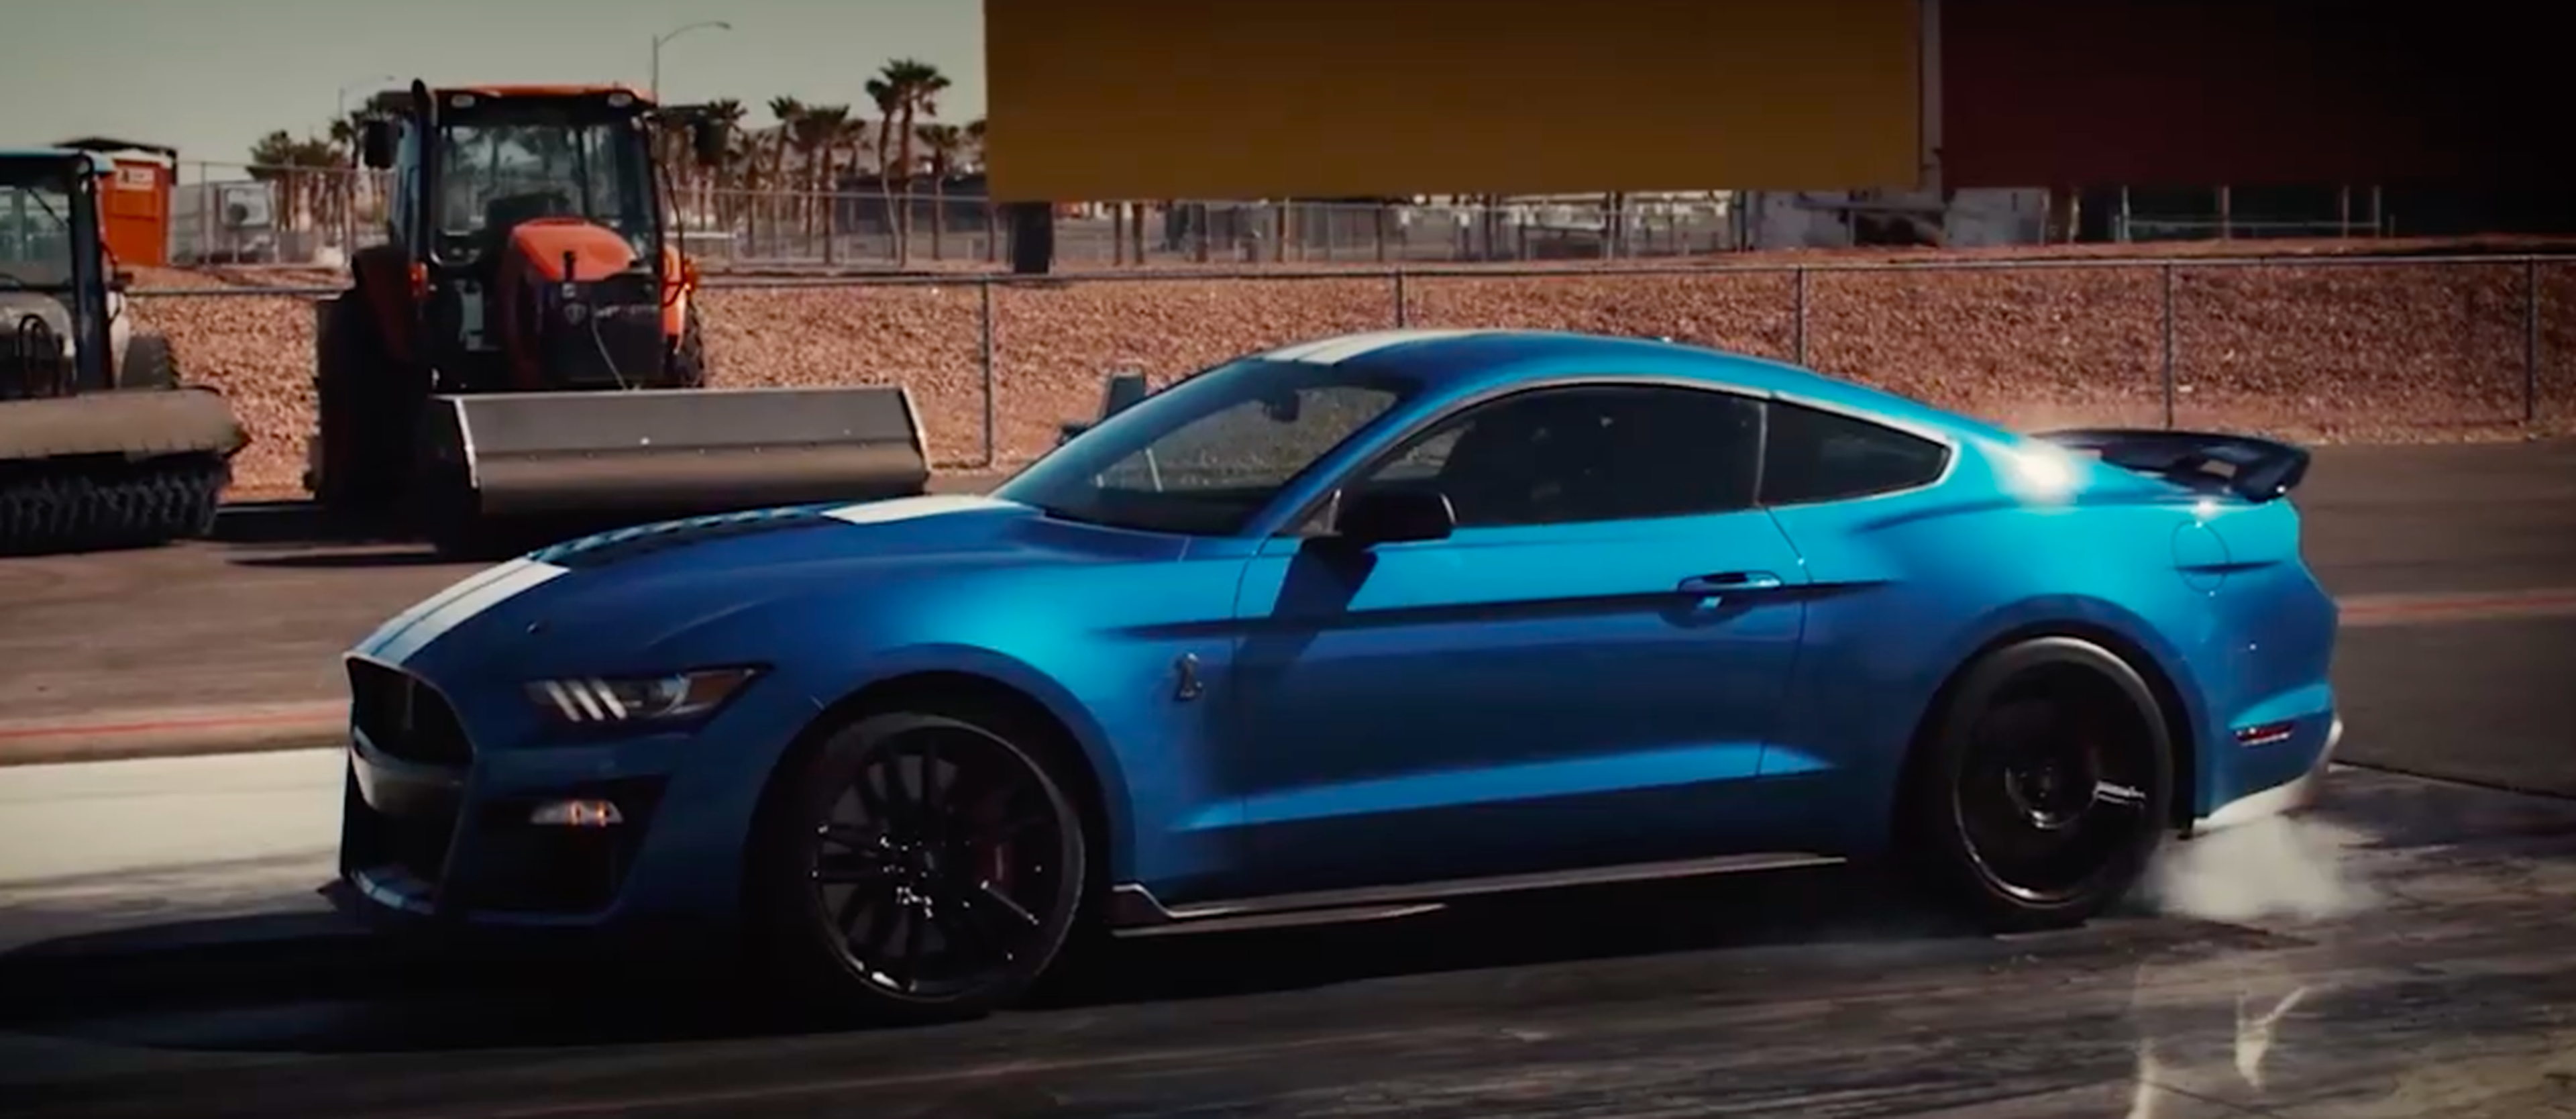 VÍDEO: esta es la aceleración de un Ford Mustang Shelby GT500 2020 utilizando el Line Lock